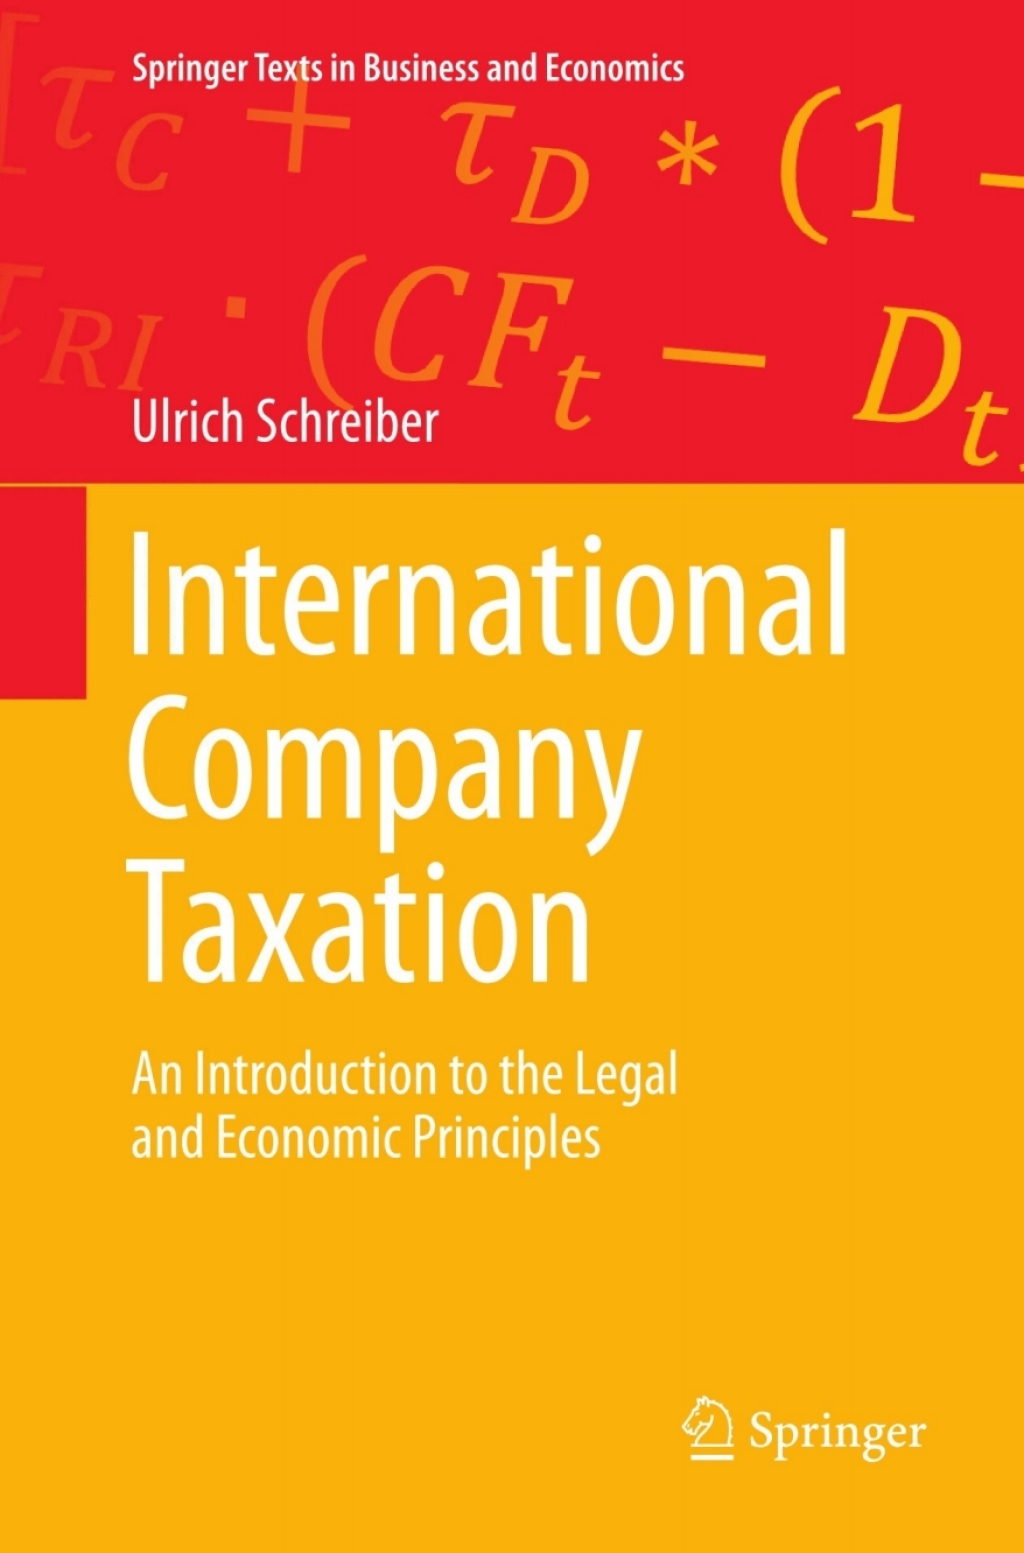 International Company Taxation (eBook) - Ulrich Schreiber,